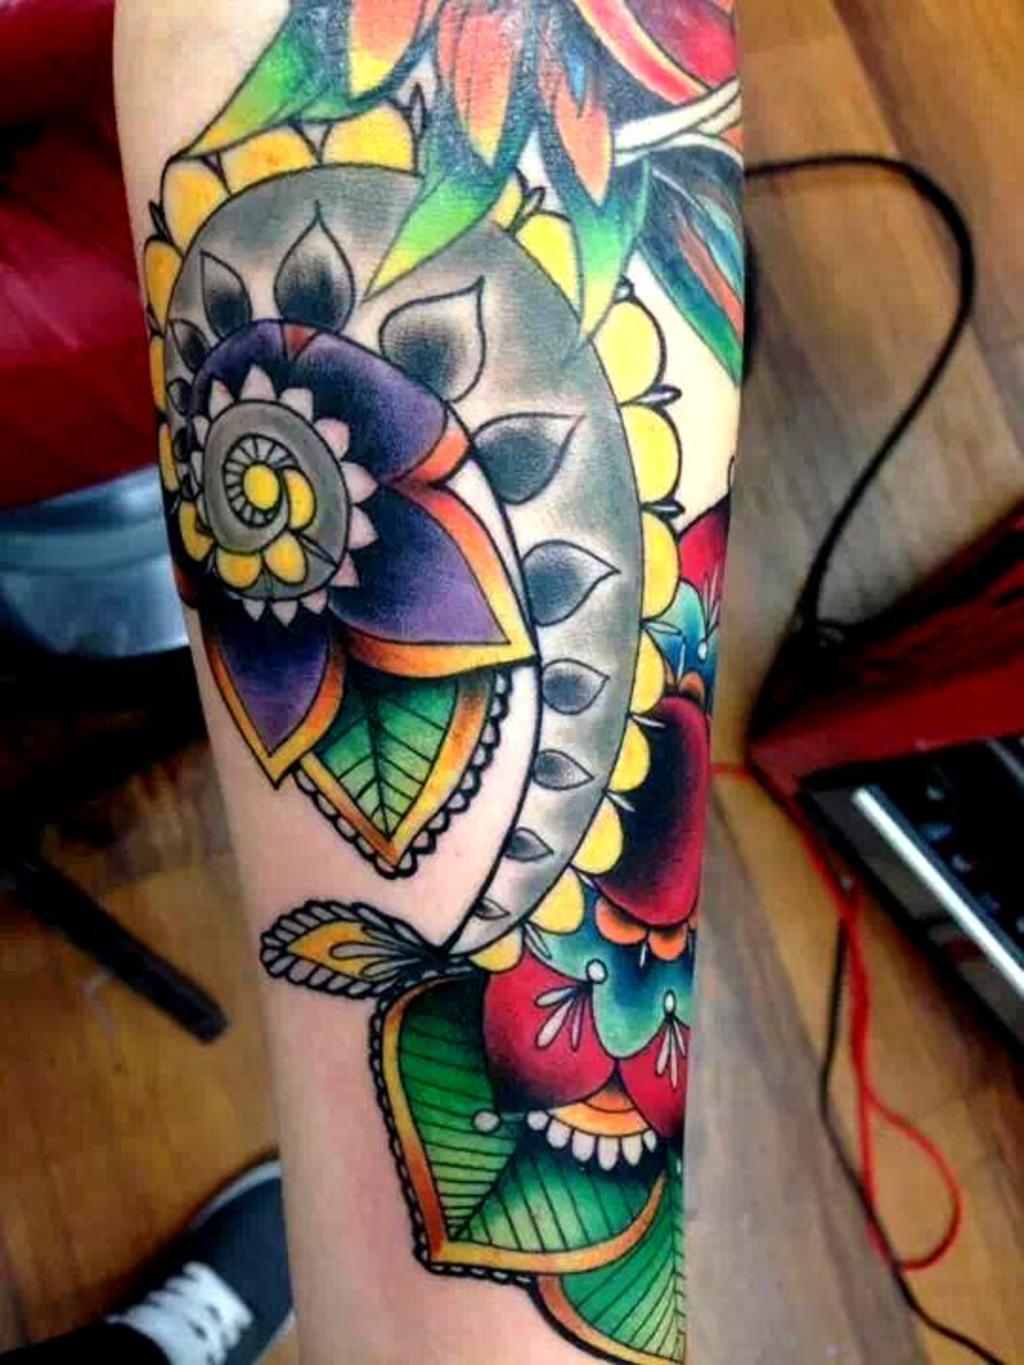 Veronica Griego tattoo by Adrian Villalobos